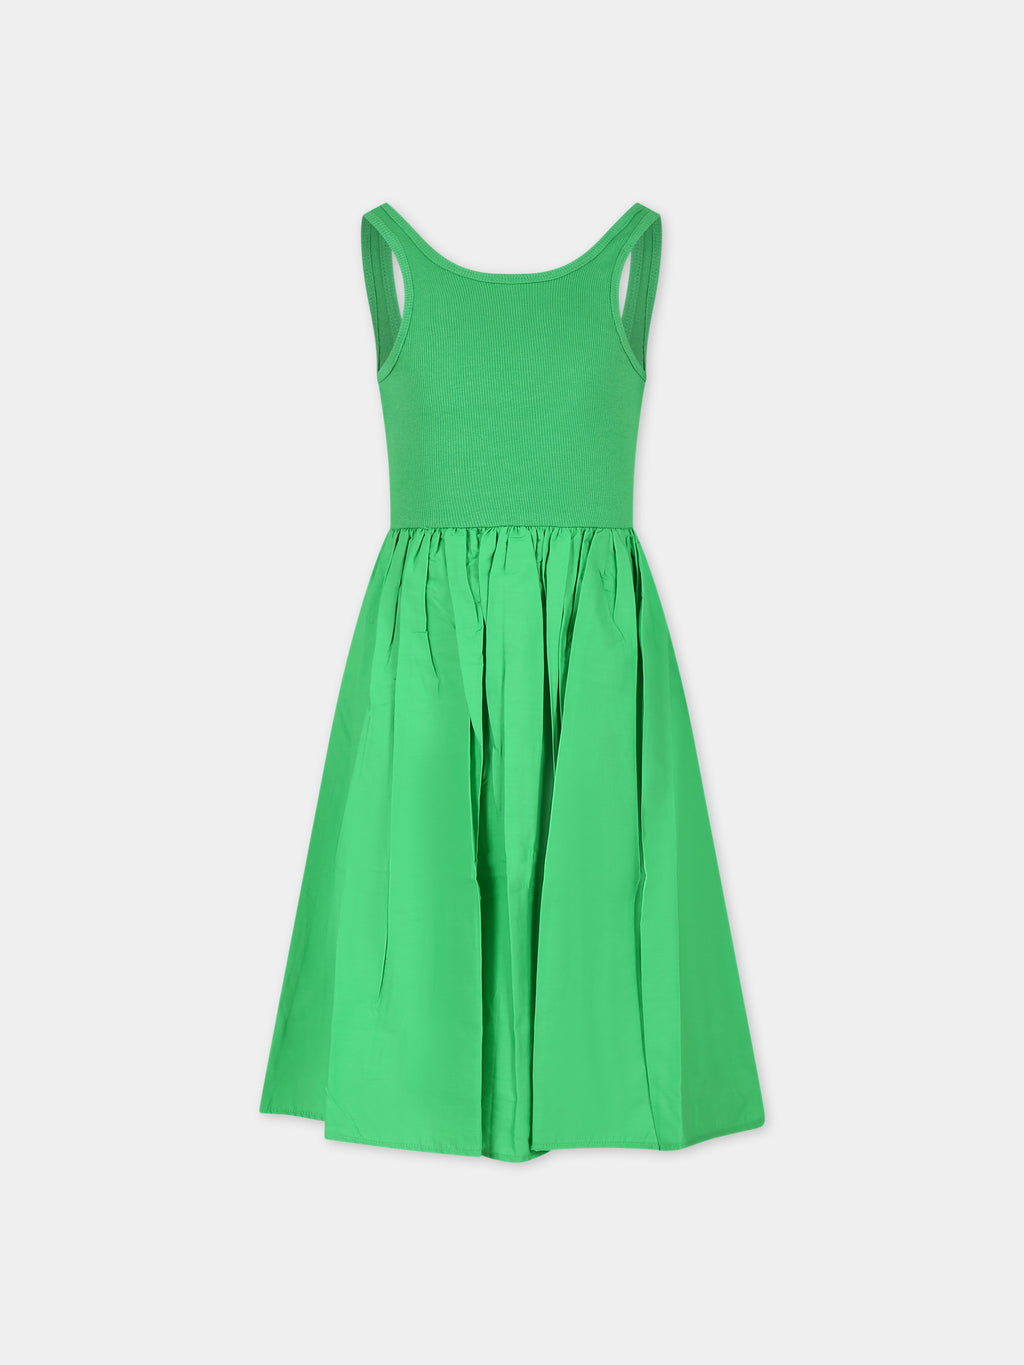 Green dress for girl